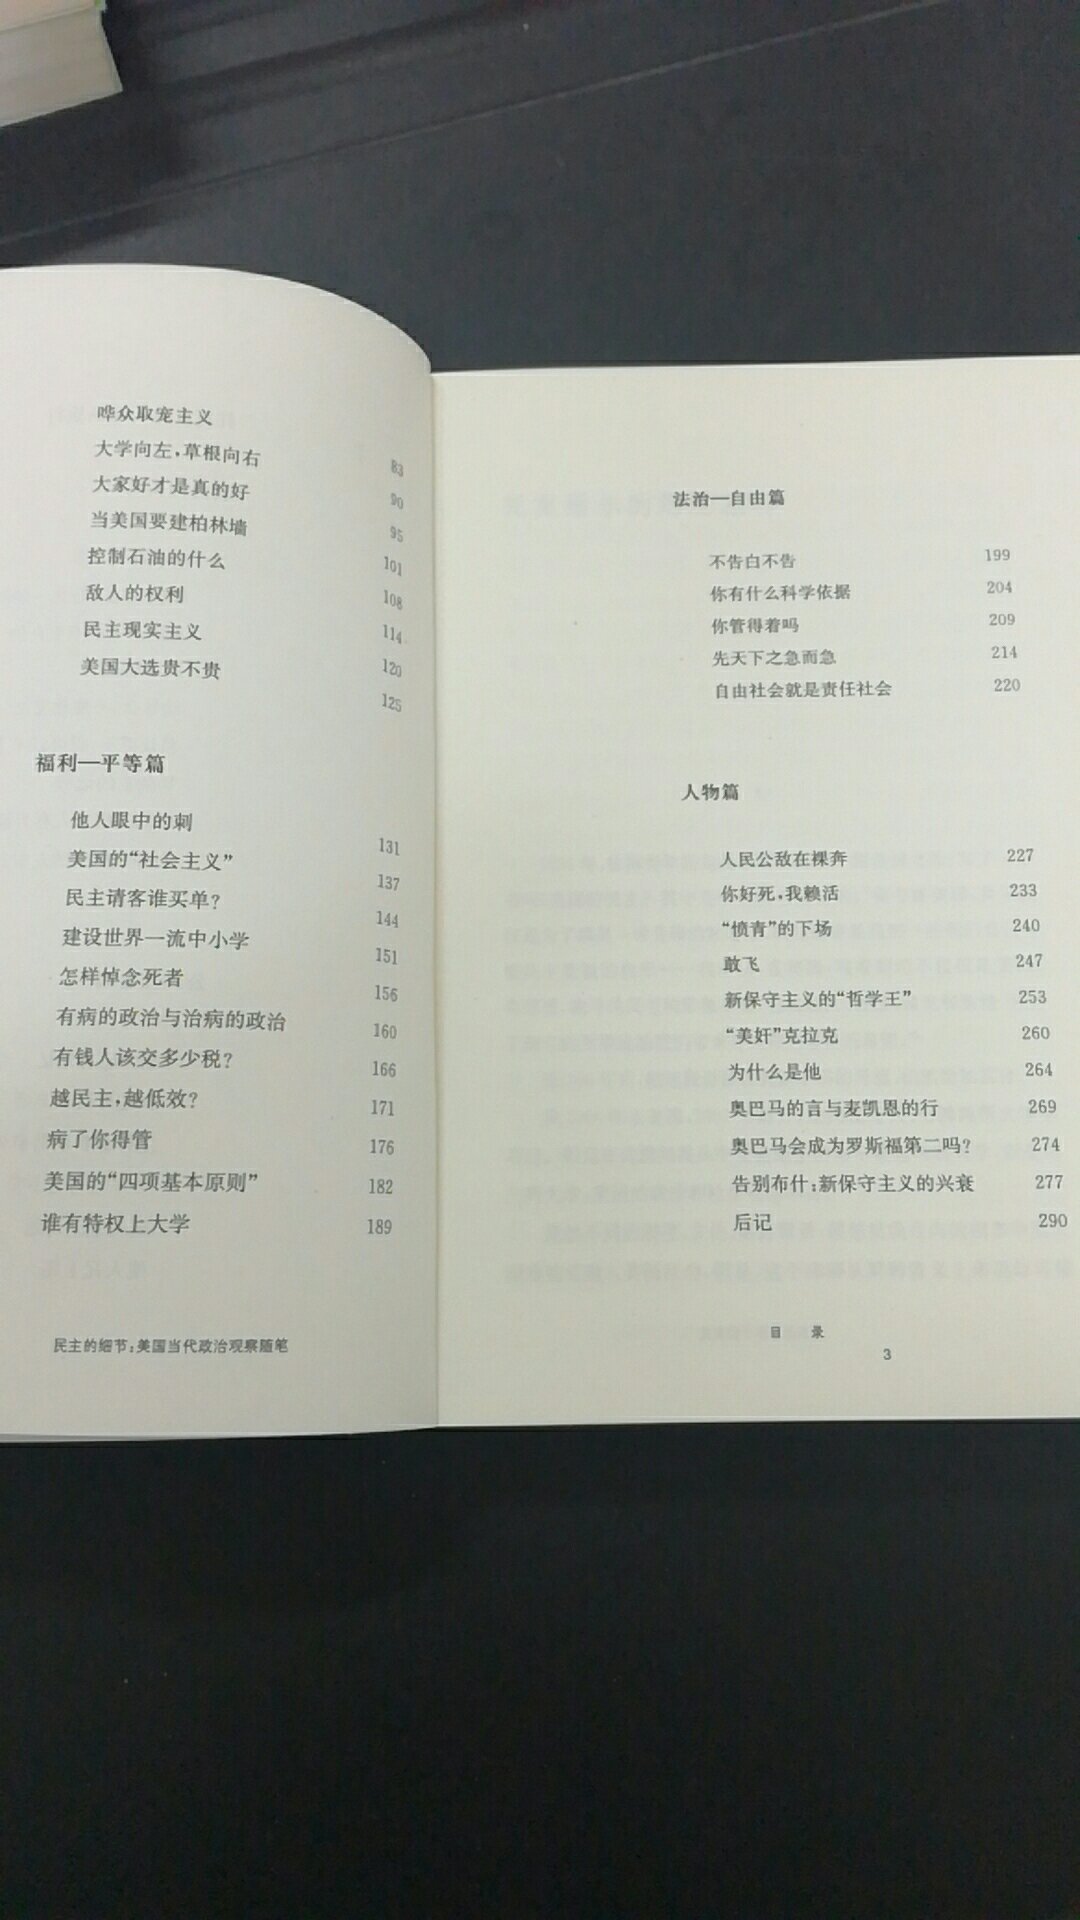 刘瑜的书还是值得看的。